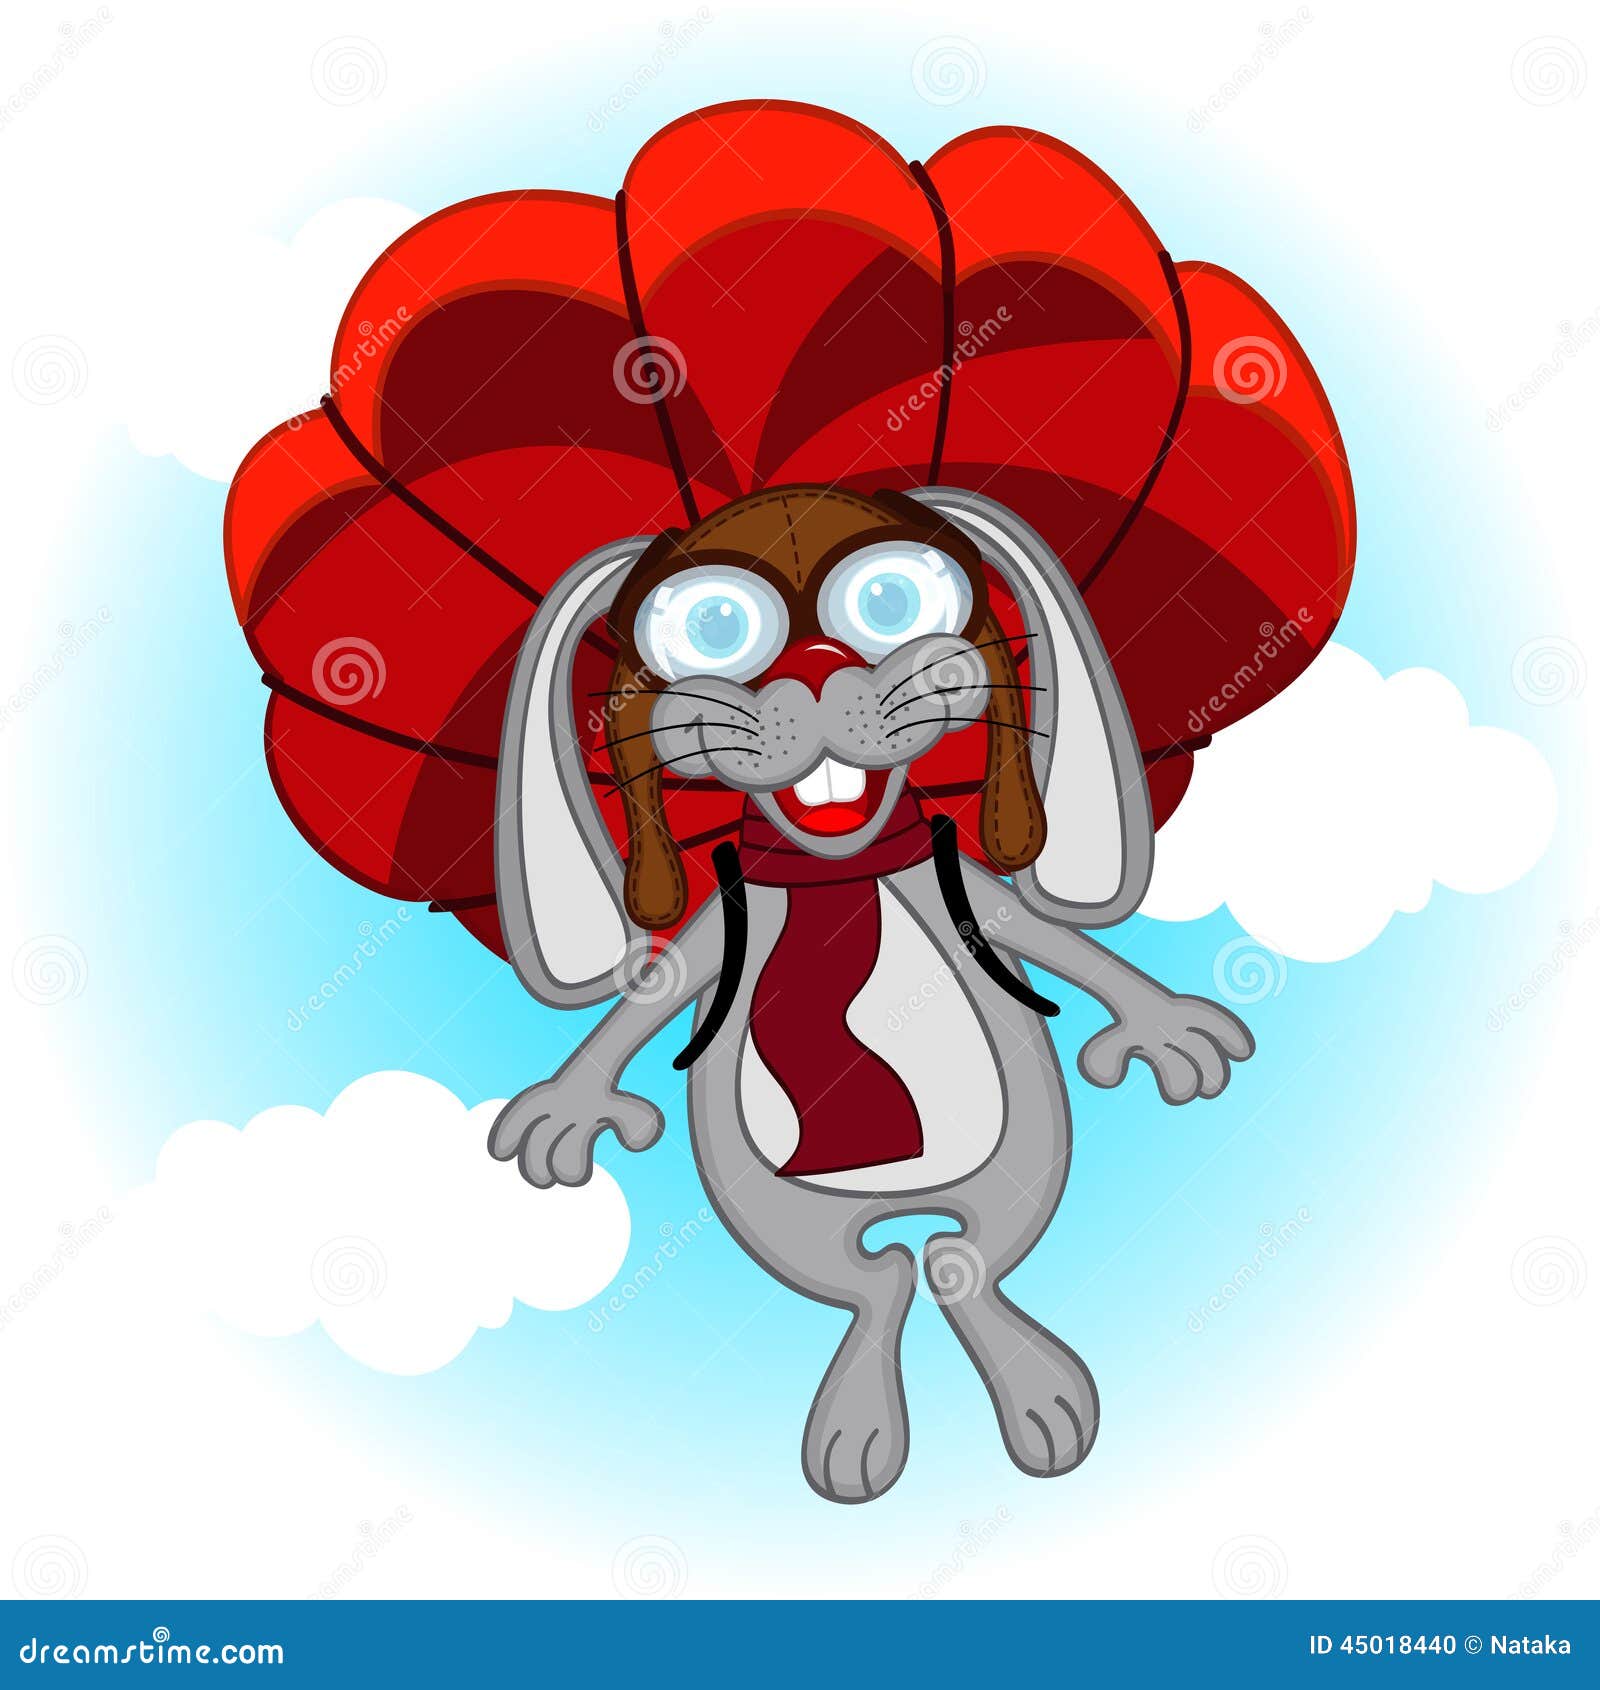 rabbit parachutist